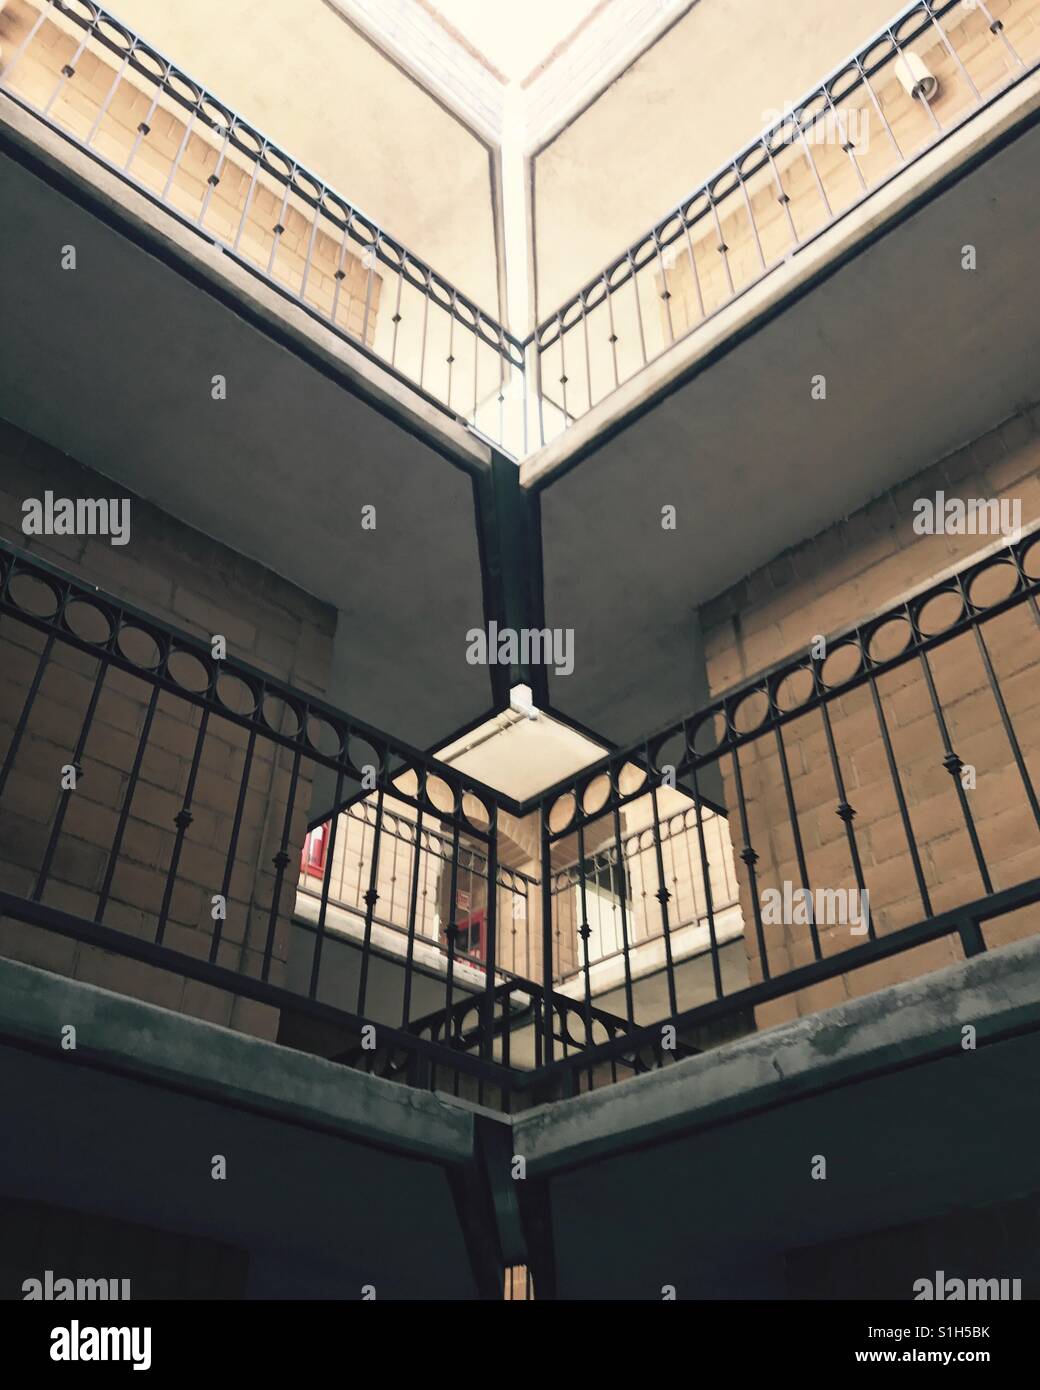 El arte de la simetría plasmada en la edificación Foto de stock